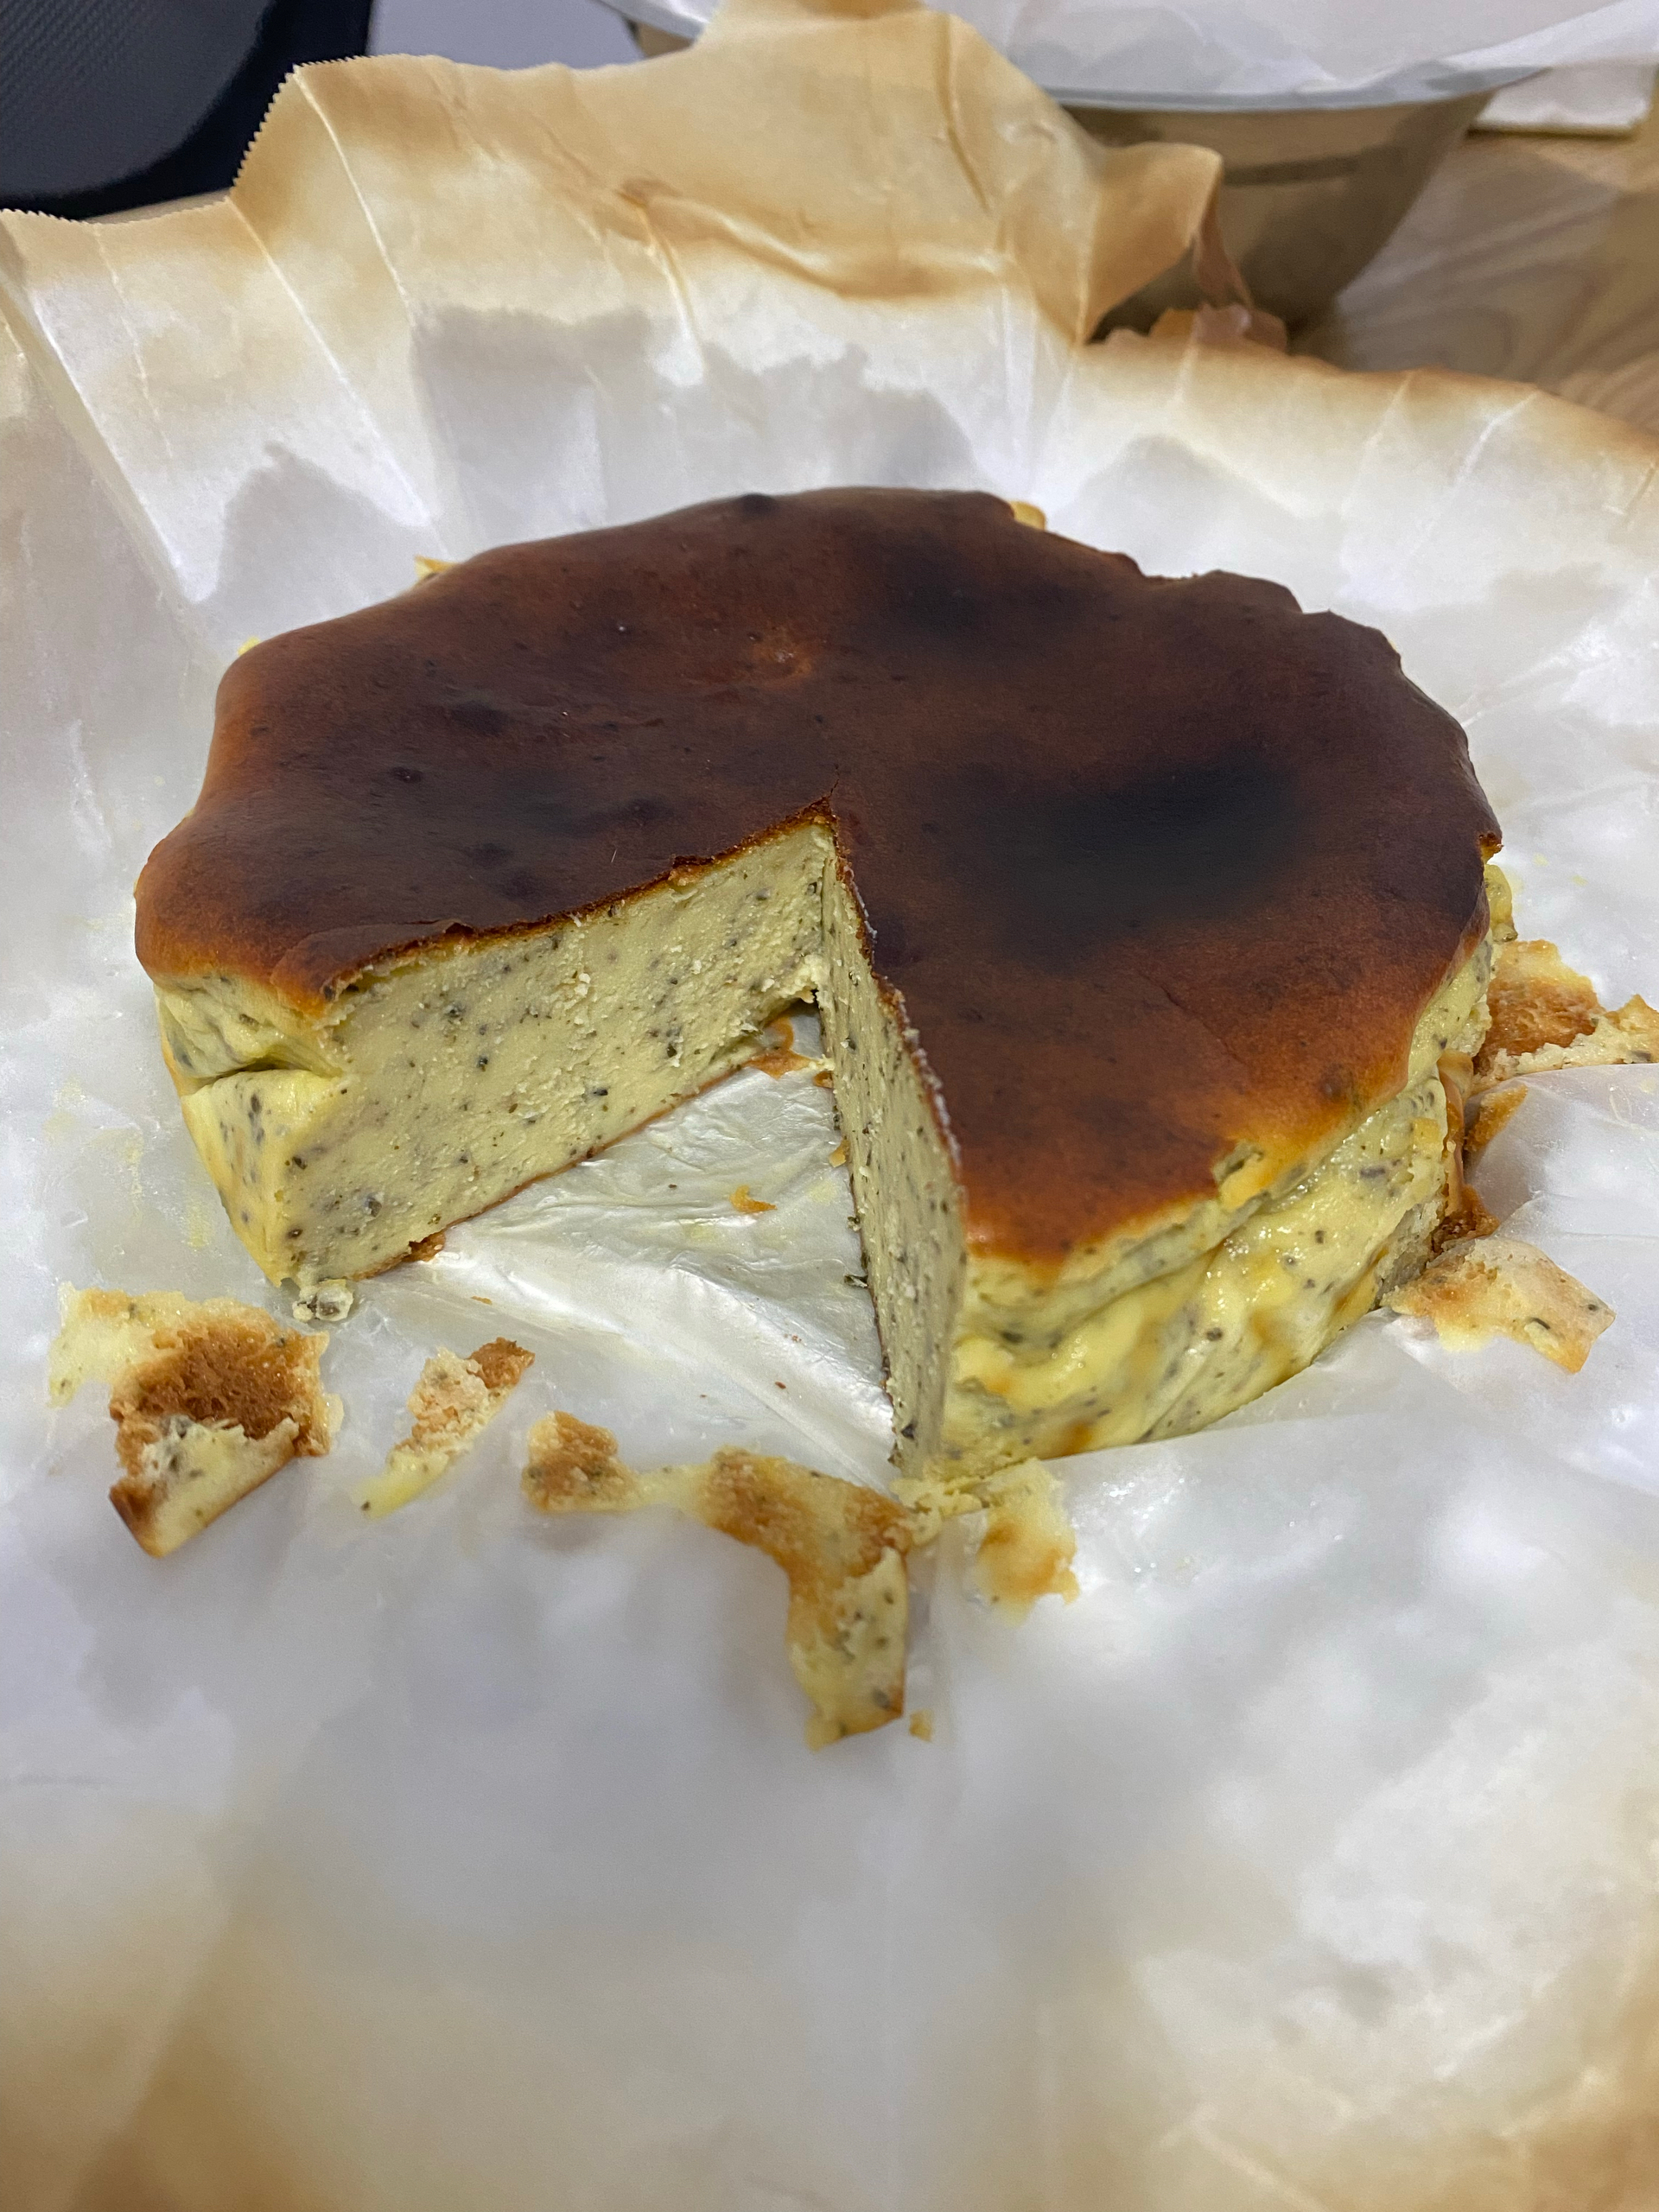 【原创】
零失败的下午茶-Basque巴斯克芝士蛋糕（消耗妙可蓝多奶油奶酪、雀巢淡奶油）